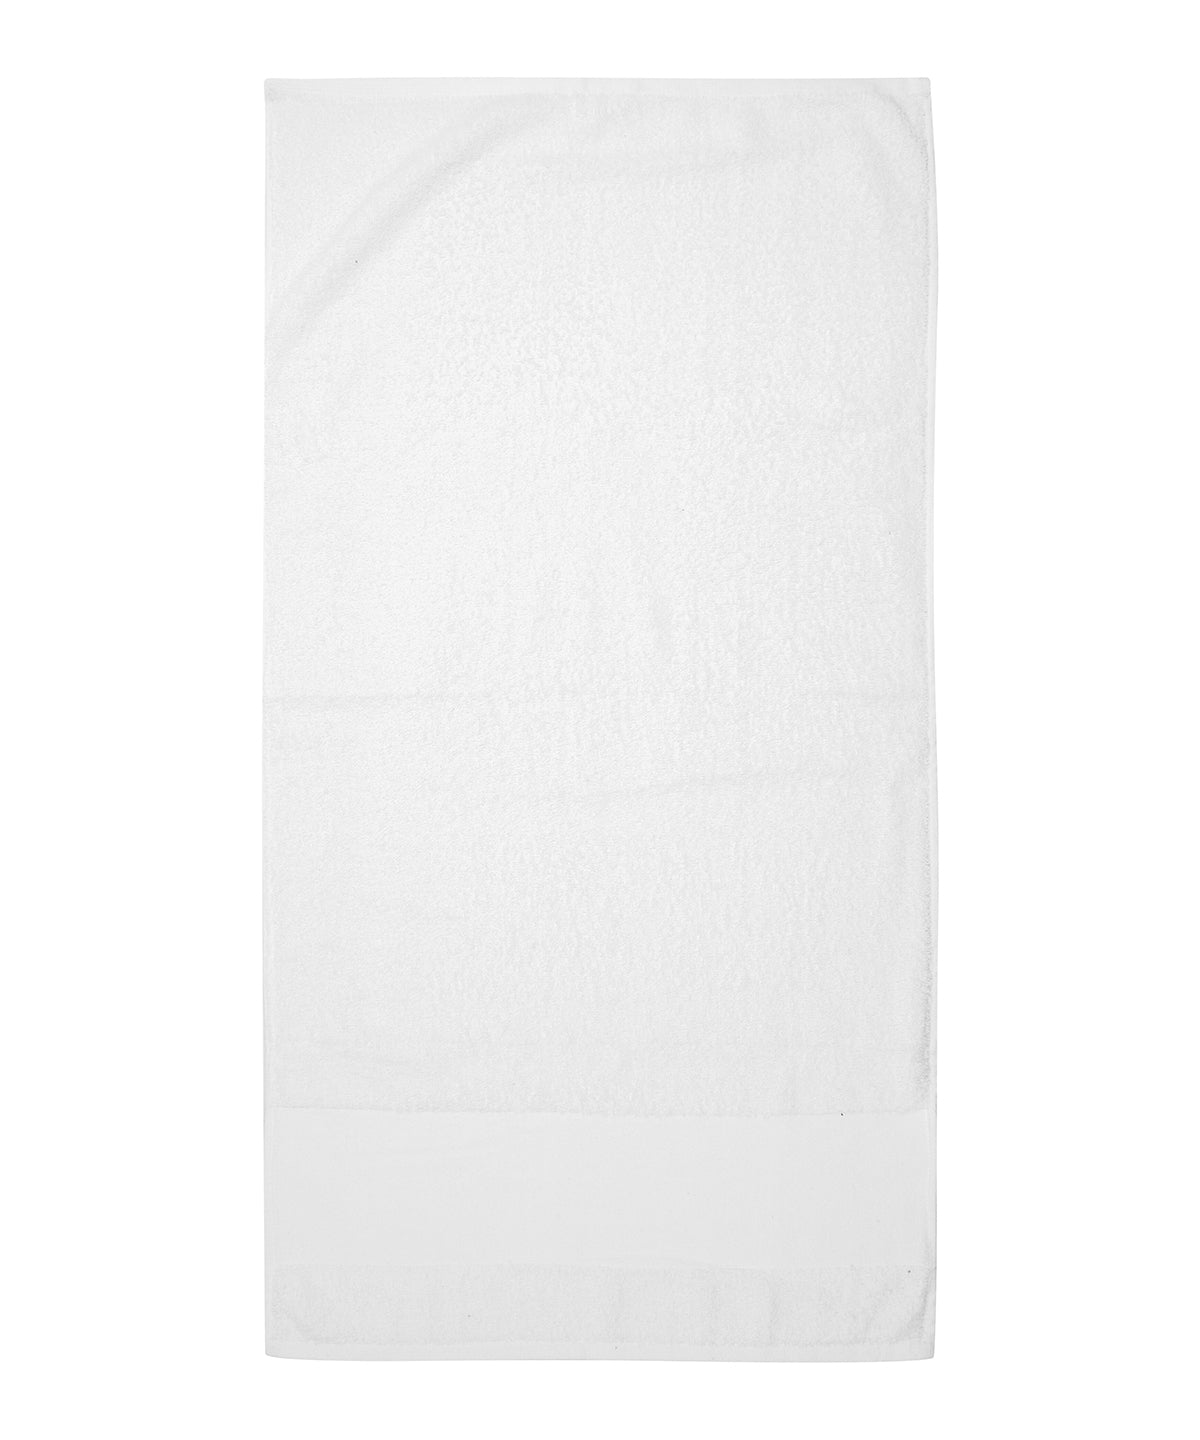 Printable border hand towel 